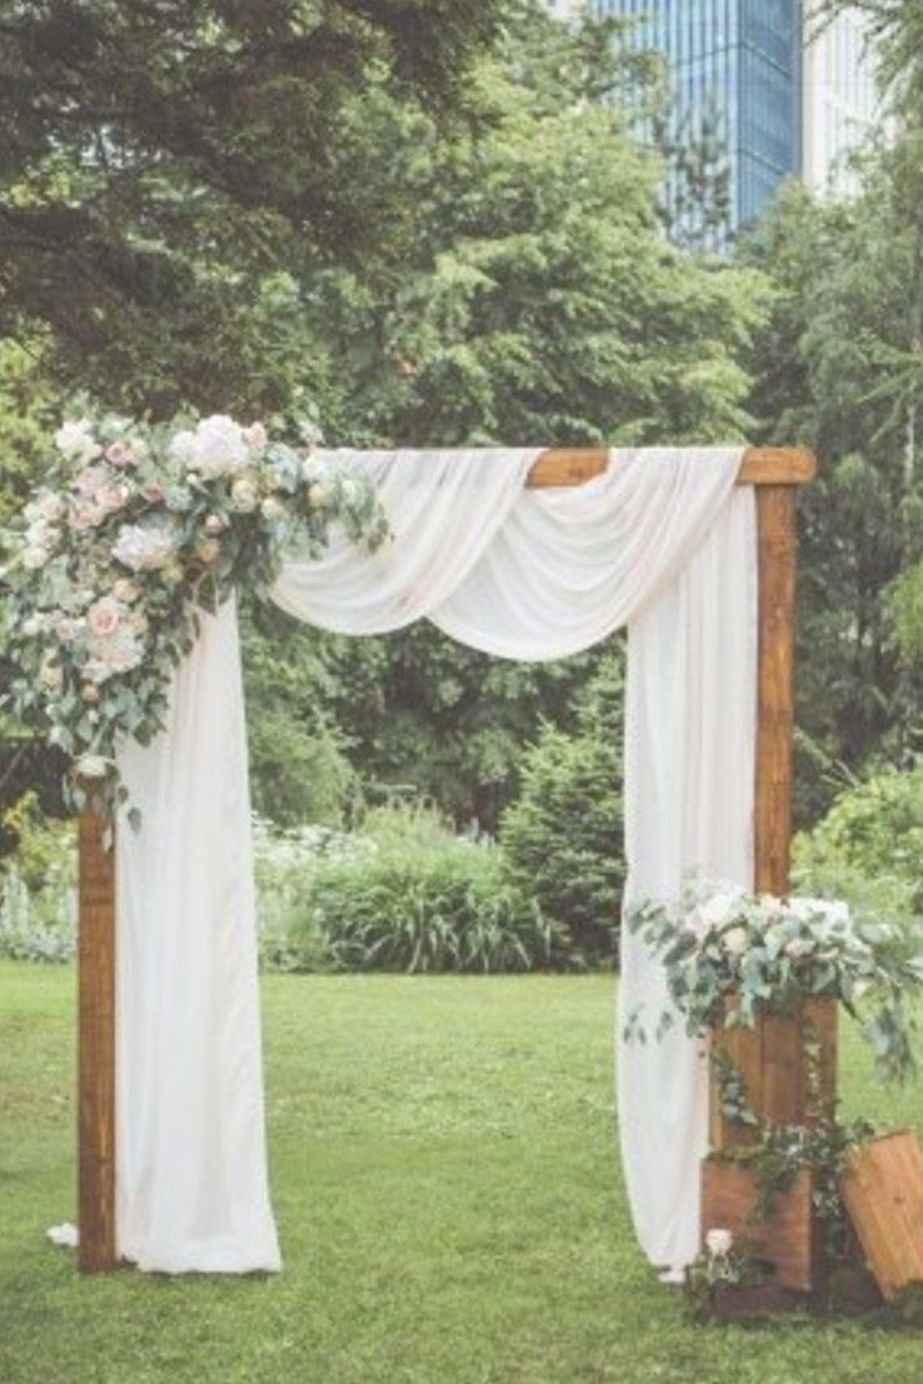 Hochzeitsfeier Im Garten Inspirierend Sand Ceremony for Wedding Rustic Wedding Shower Decoration